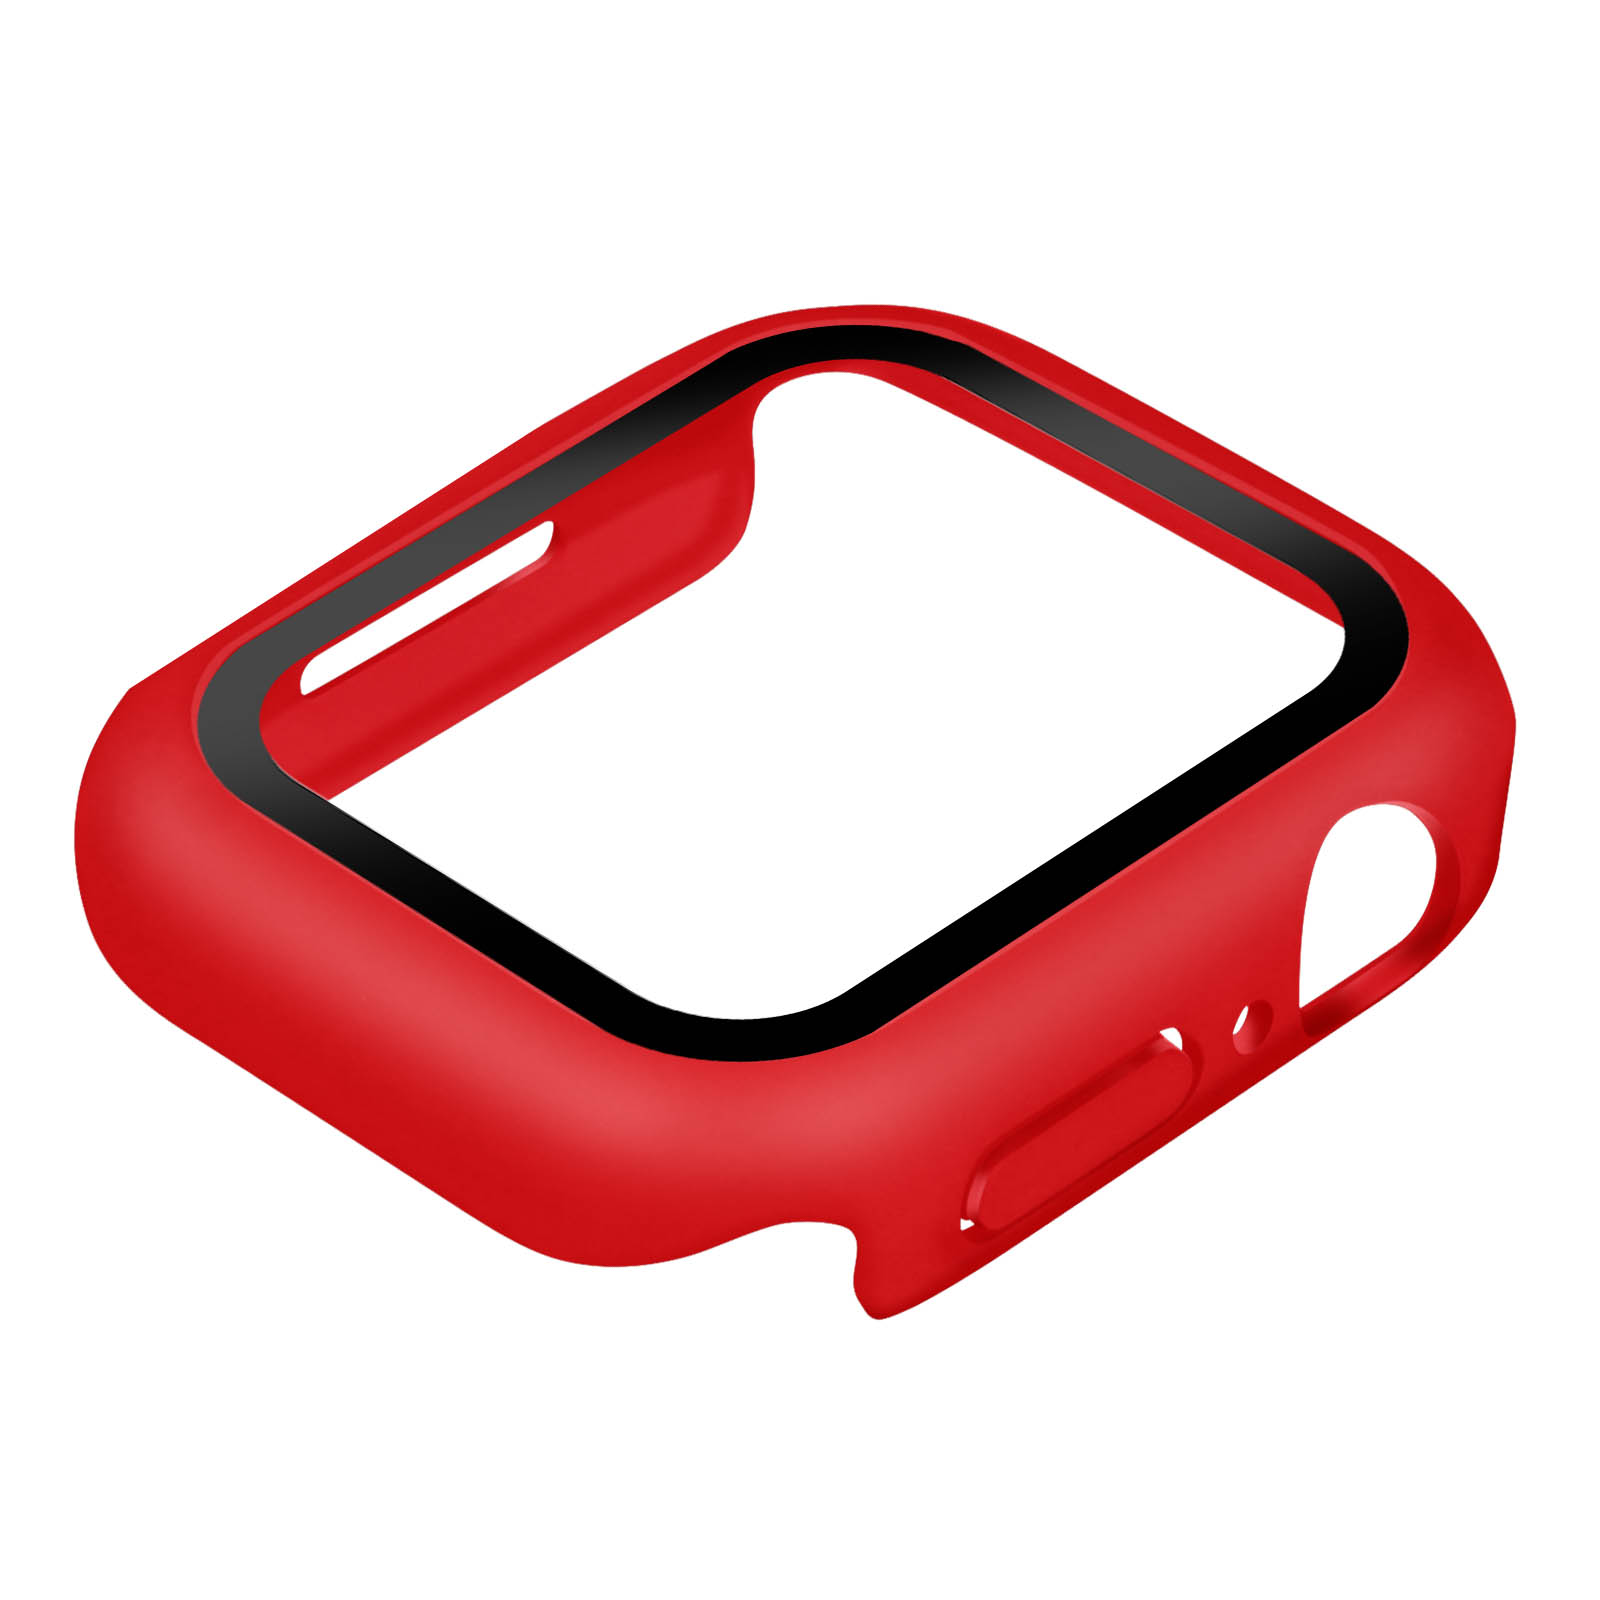 AVIZAR harte Series Watch Schutzhülle, 7, Full Cover, Apple Apple, Rot